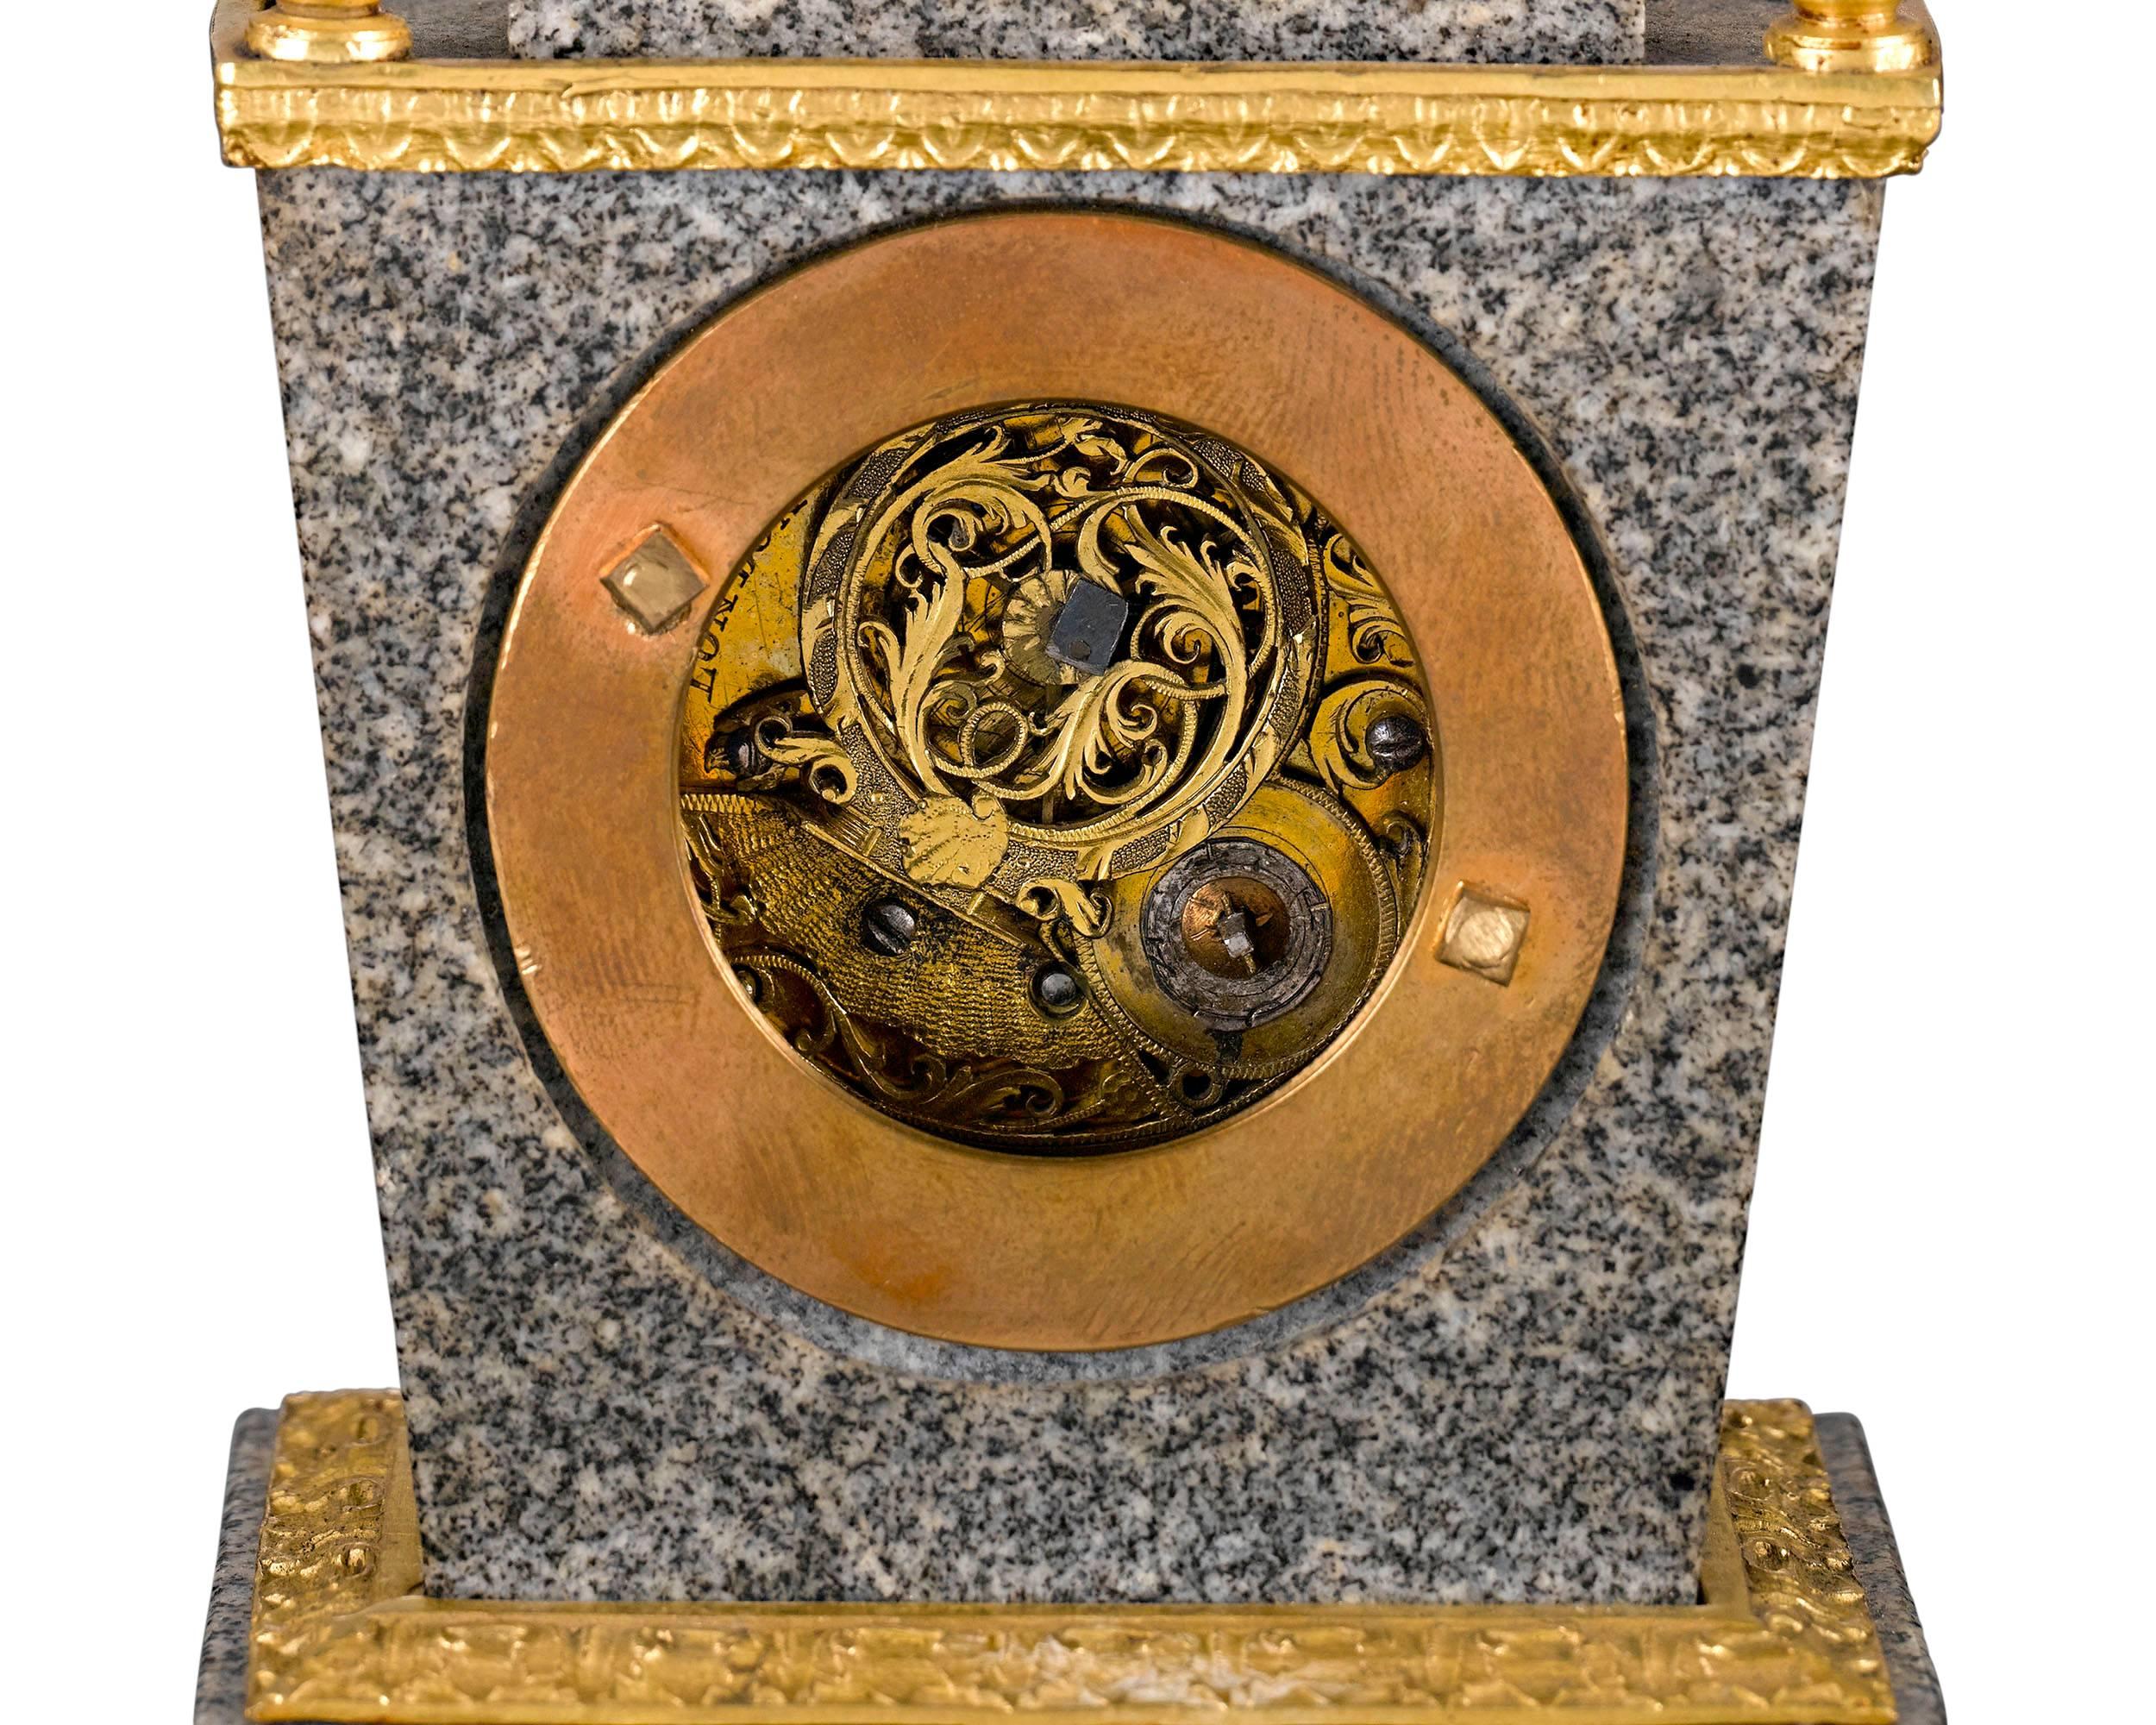 Un boîtier en porphyre exquis et en bronze doré abrite le mouvement à verge de cette rare horloge de l'éminent horloger anglais John Ellicott. Les créations d'Ellicott sont considérées comme les plus belles pièces d'horlogerie anglaises du XVIIIe